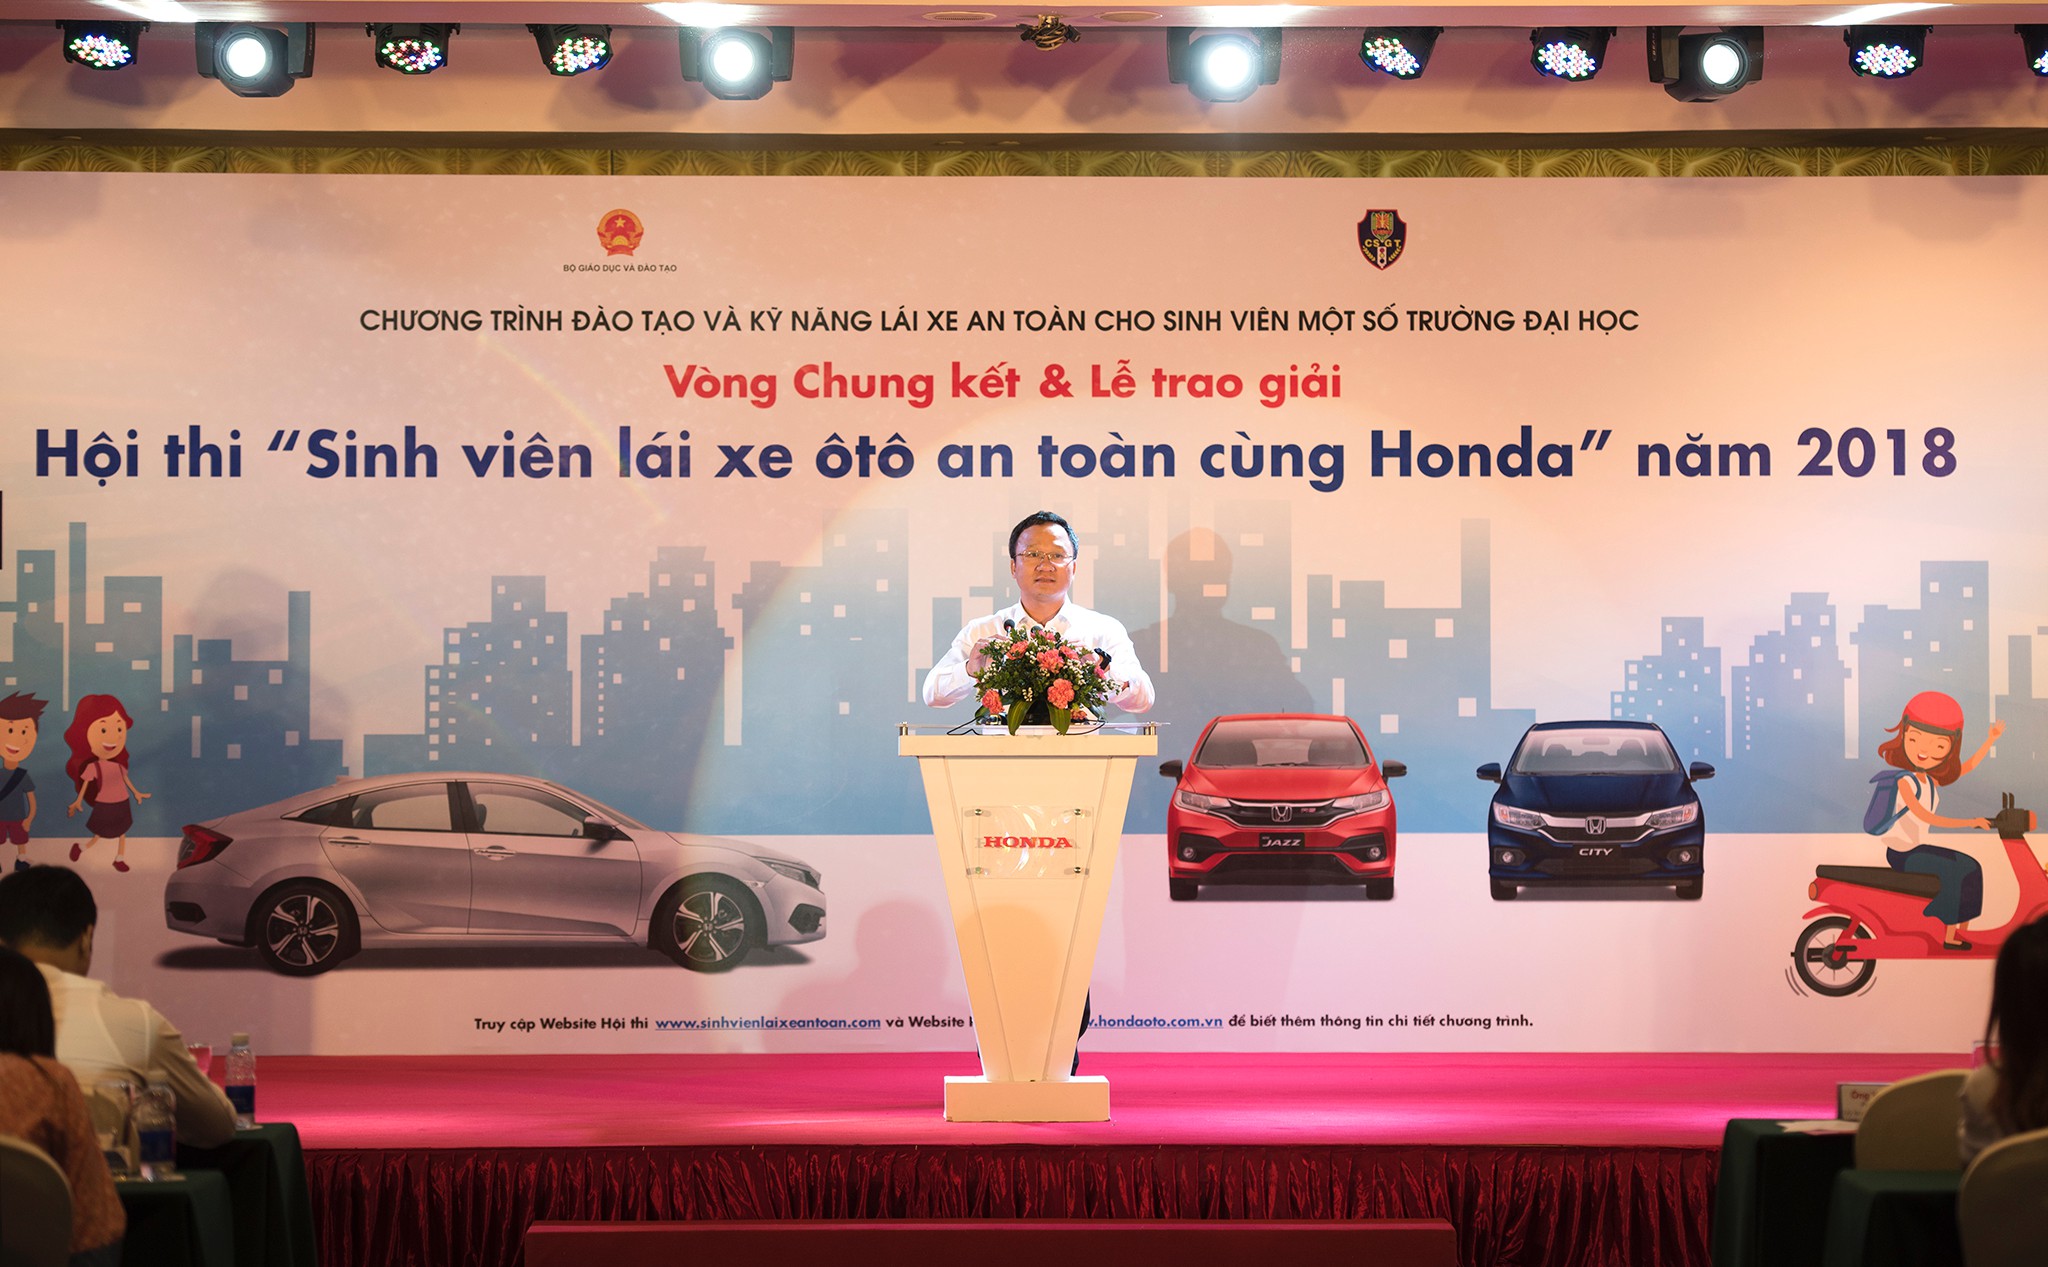 [QC] Sôi động Vòng chung kết Hội thi “Sinh viên lái xe ôtô an toàn cùng Honda năm 2018”